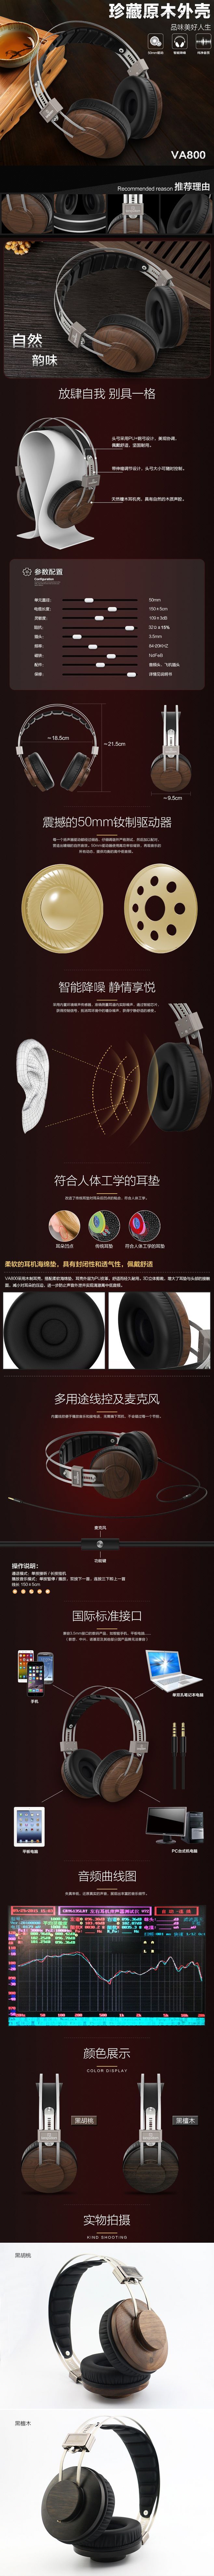 淘宝美工小玖玖VA800珍藏原木外壳头戴式耳机作品